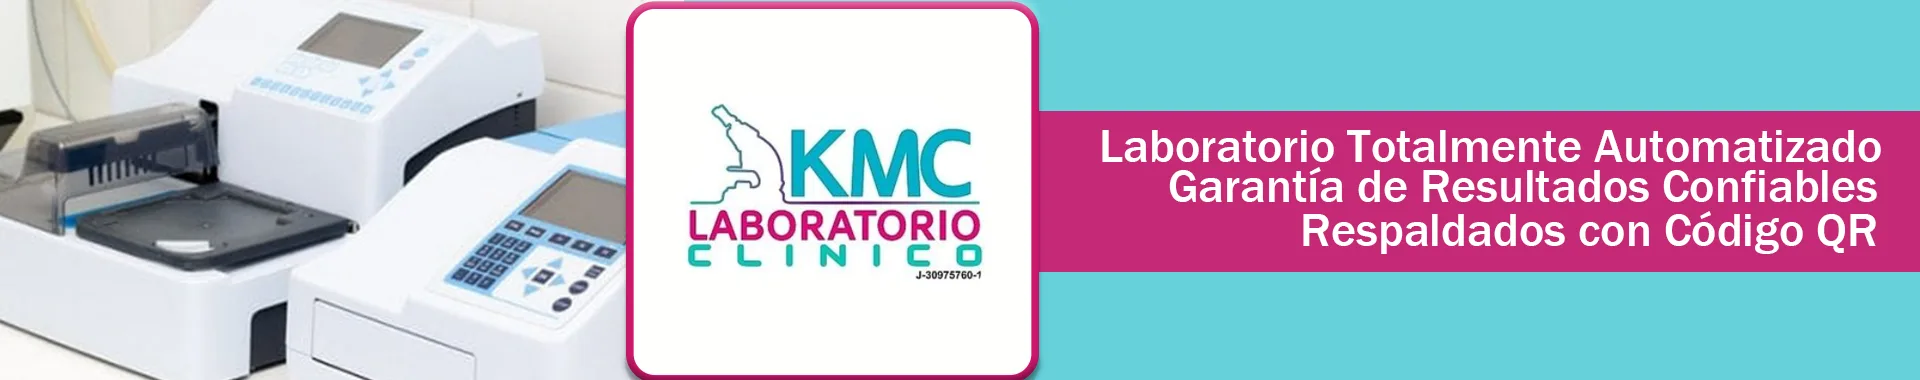 Imagen 2 del perfil de KMC Laboratorio Clínico